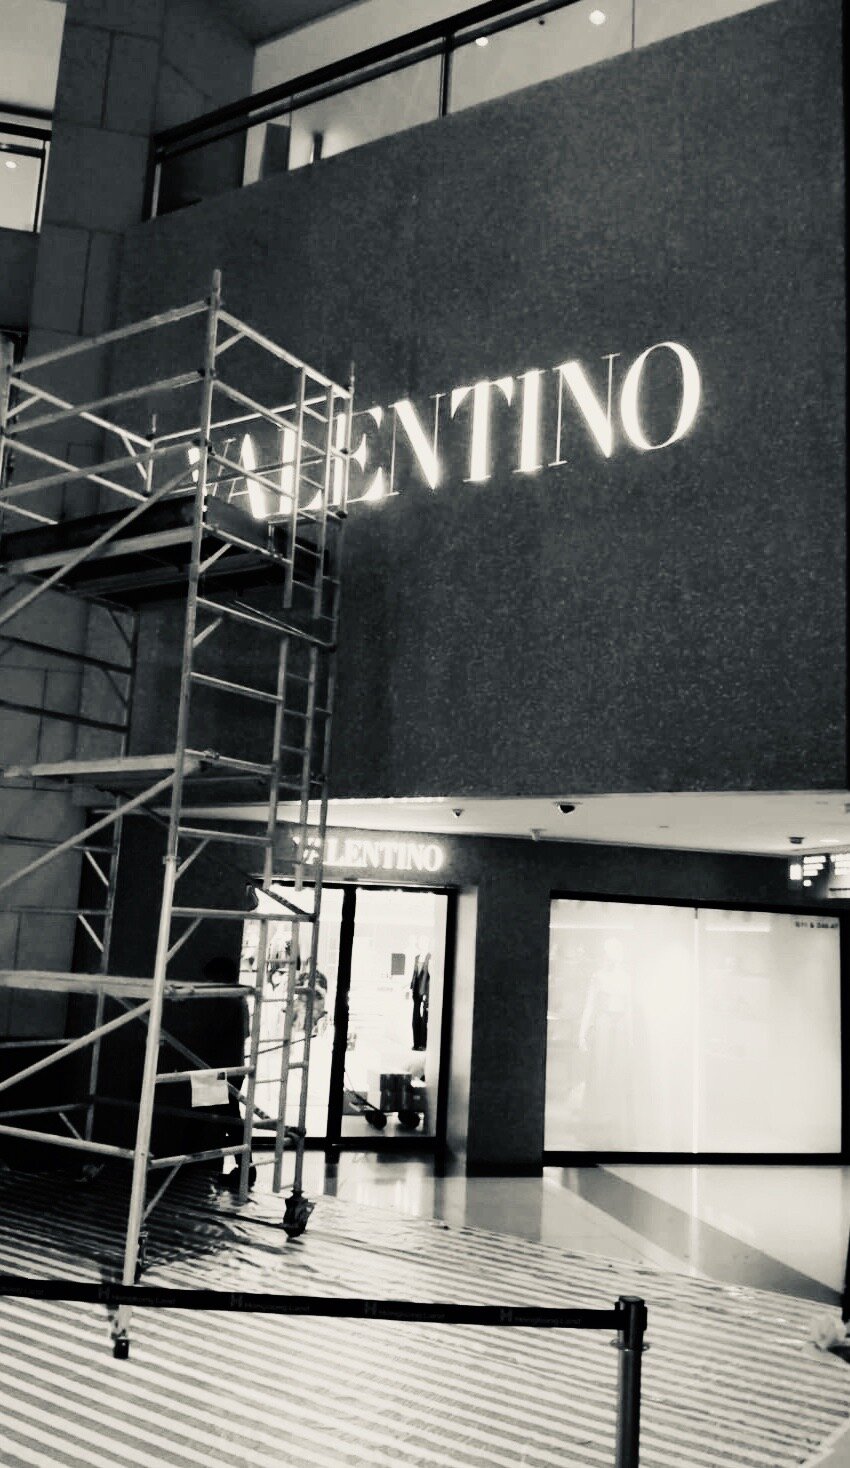 Valentino Landmark Signage Facade Installation.JPG